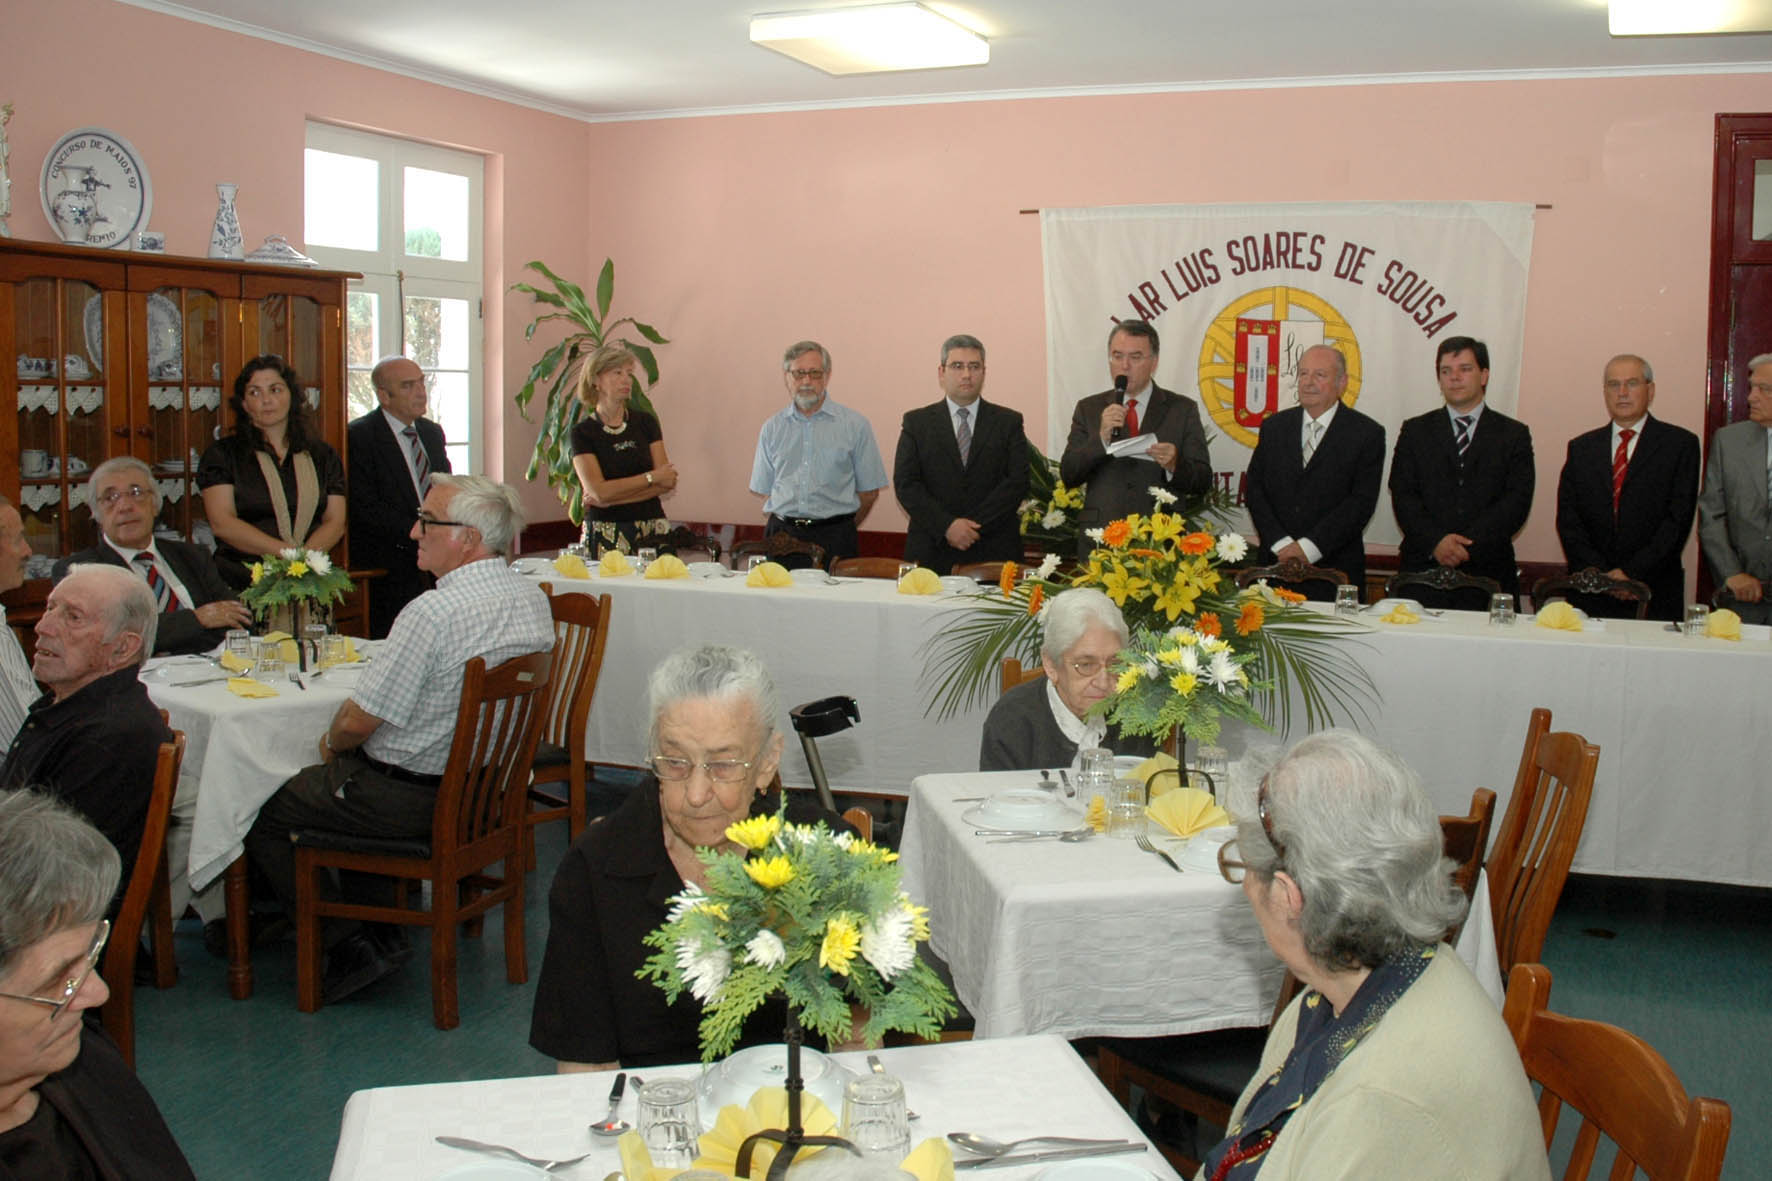 Anniversary of the Luís Soares de Sousa Retirement Home